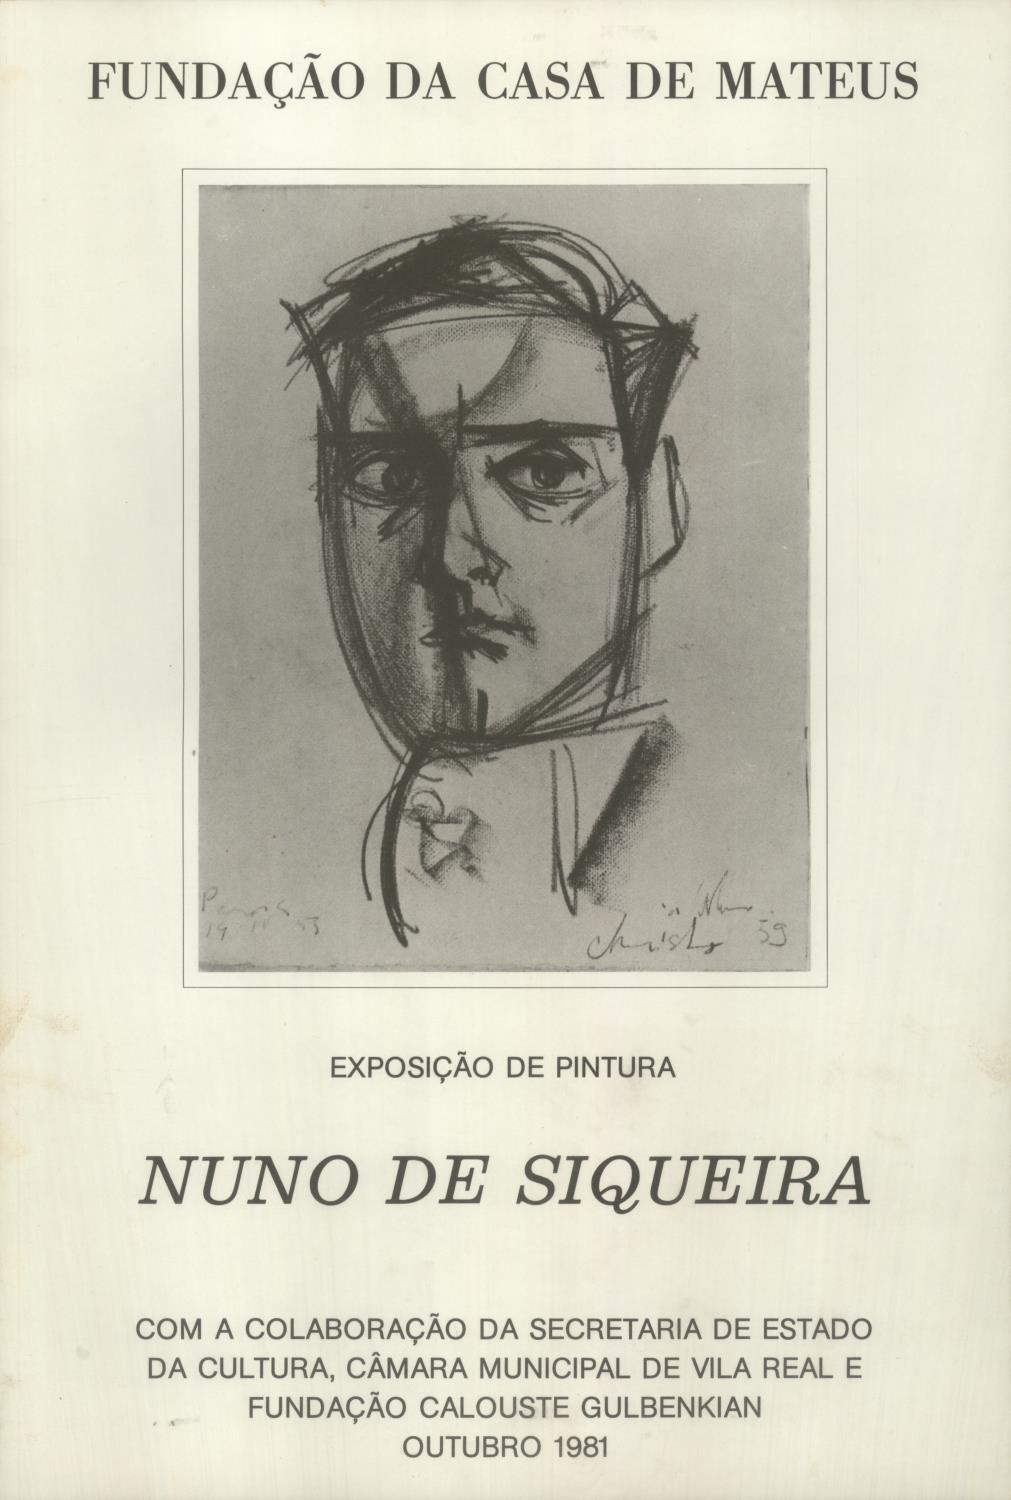 Nuno de Siqueira. 25 Années de Peinture